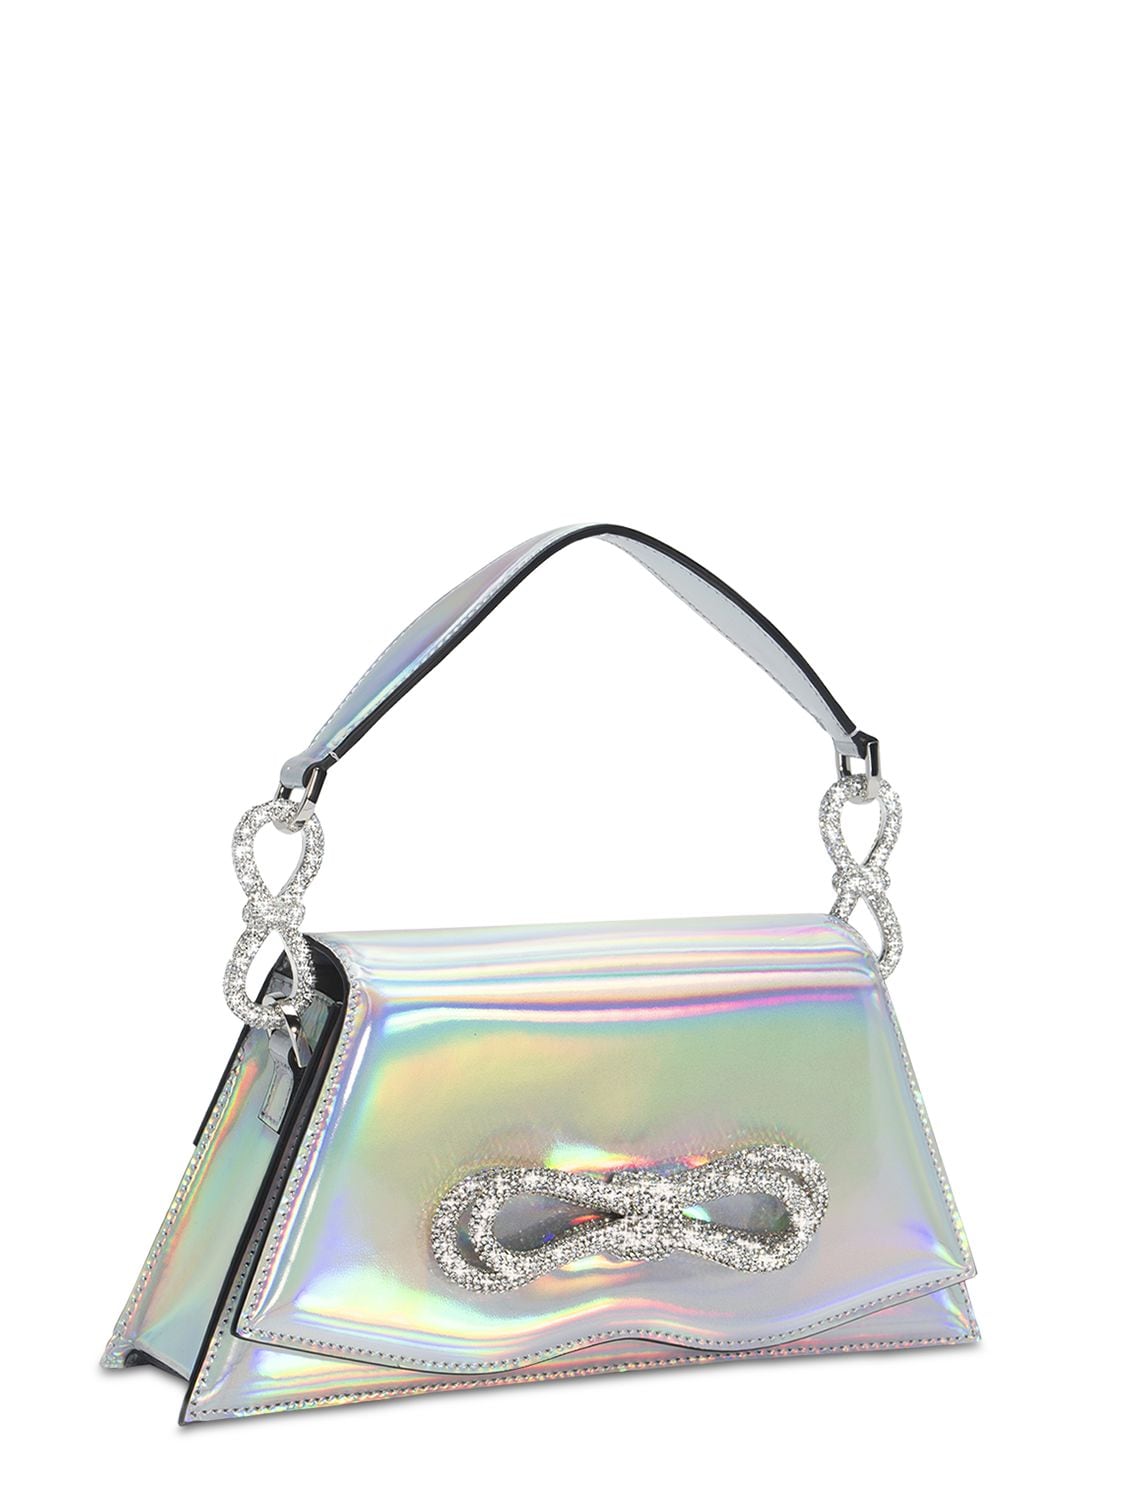 Shop Mach & Mach Samantha Iridescent Leather Handbag In Silver